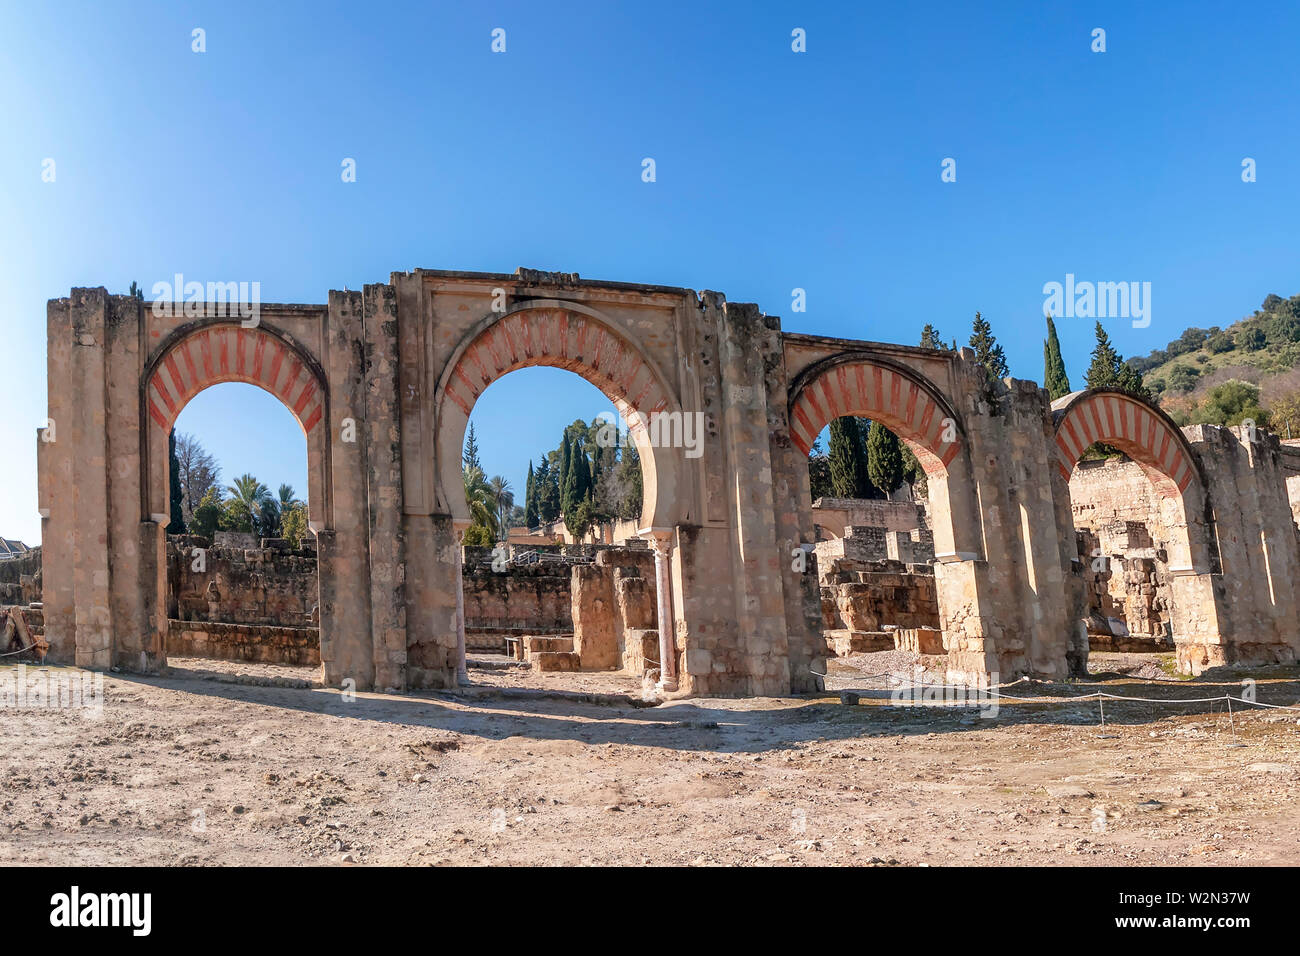 Ruins of Medina Azahara in Cordoba, Spain Stock Photo